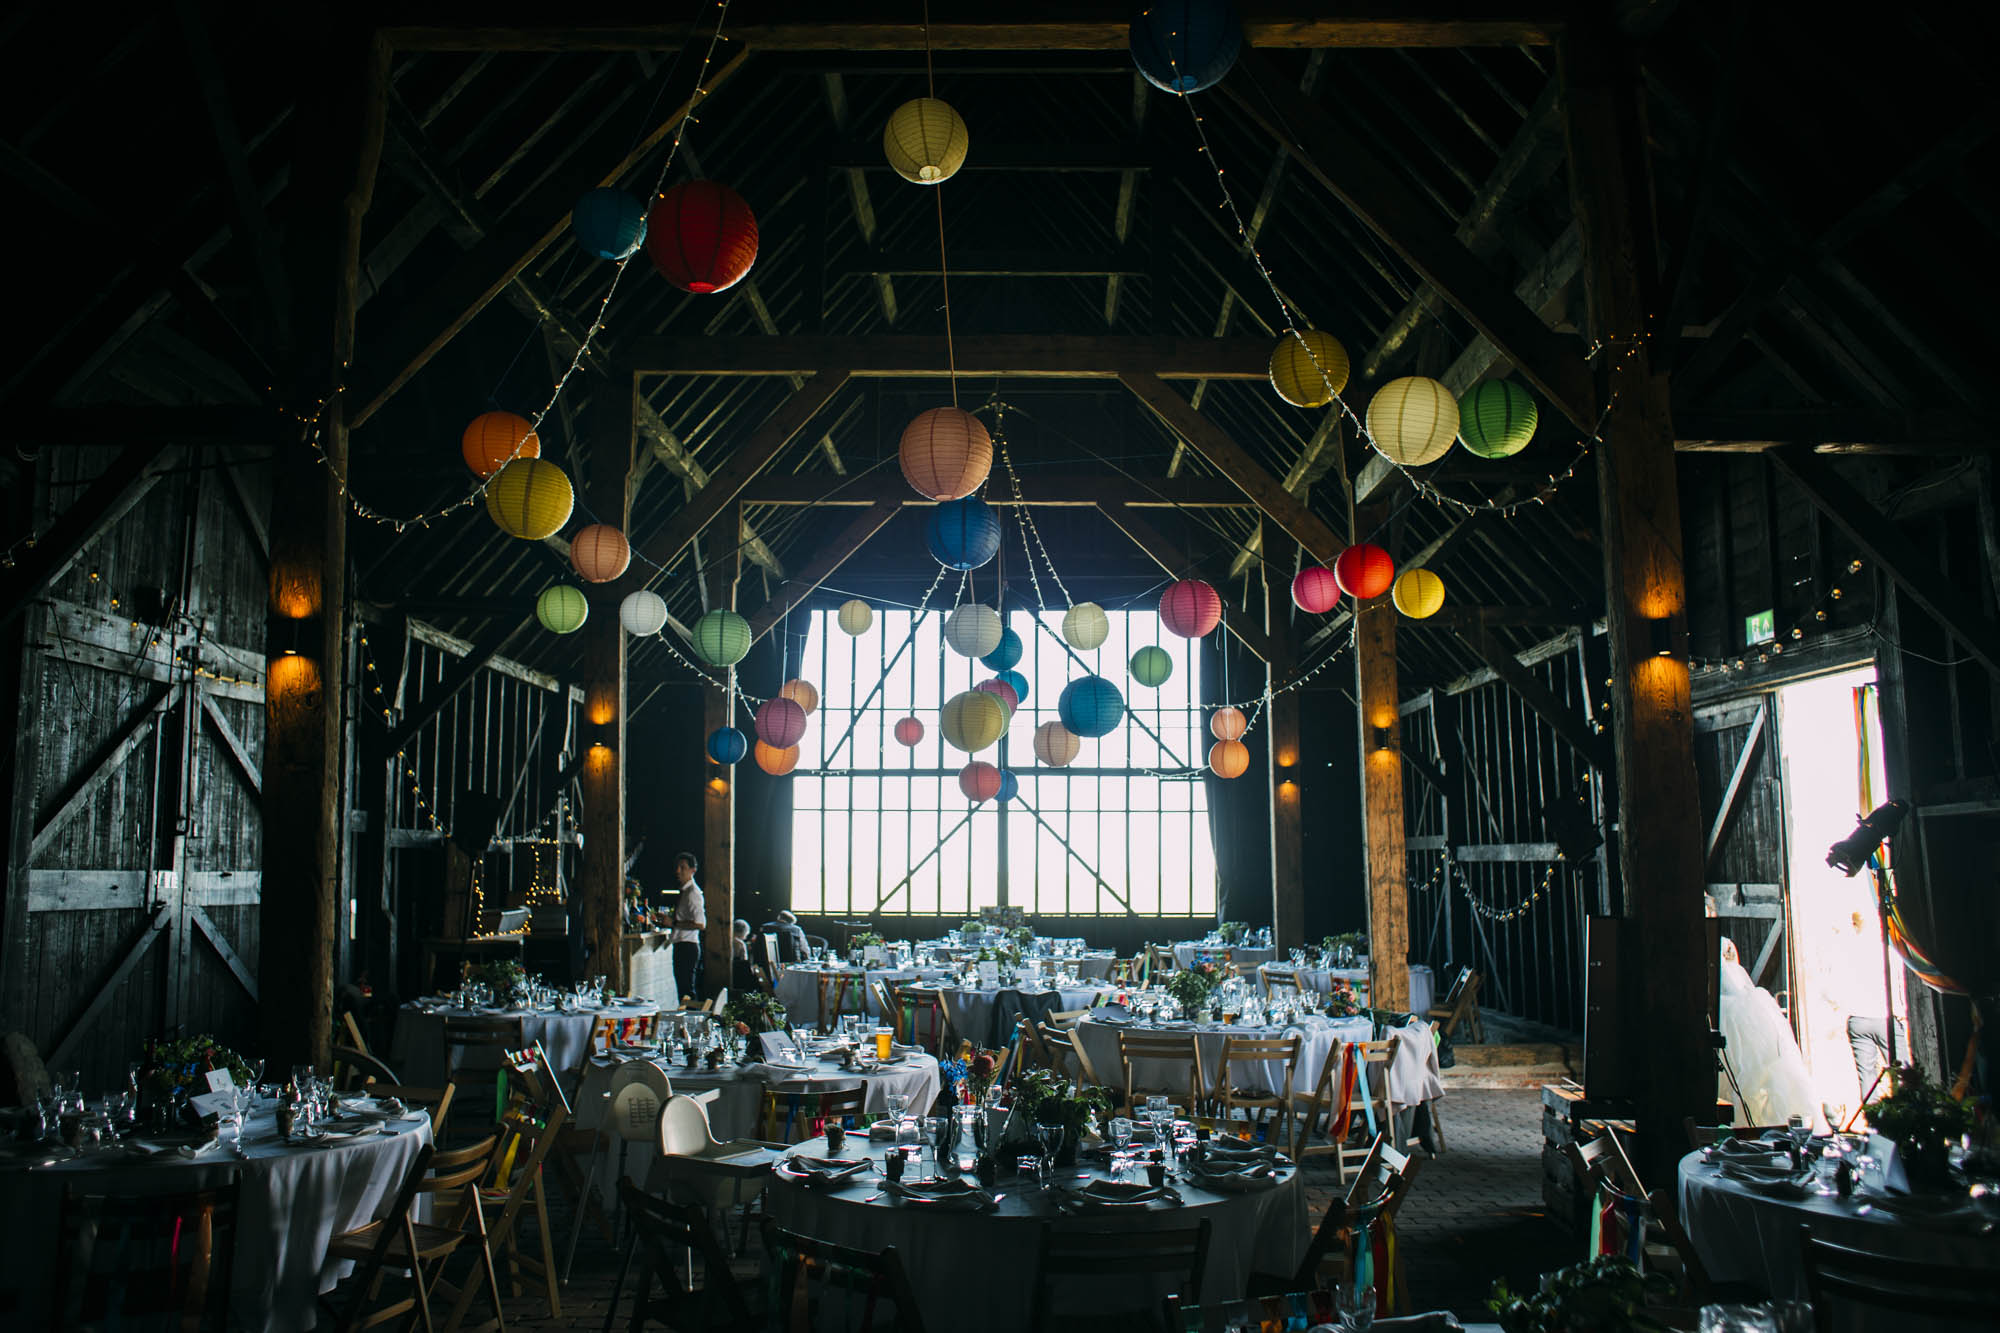 isley of sheppey barn wedding venue